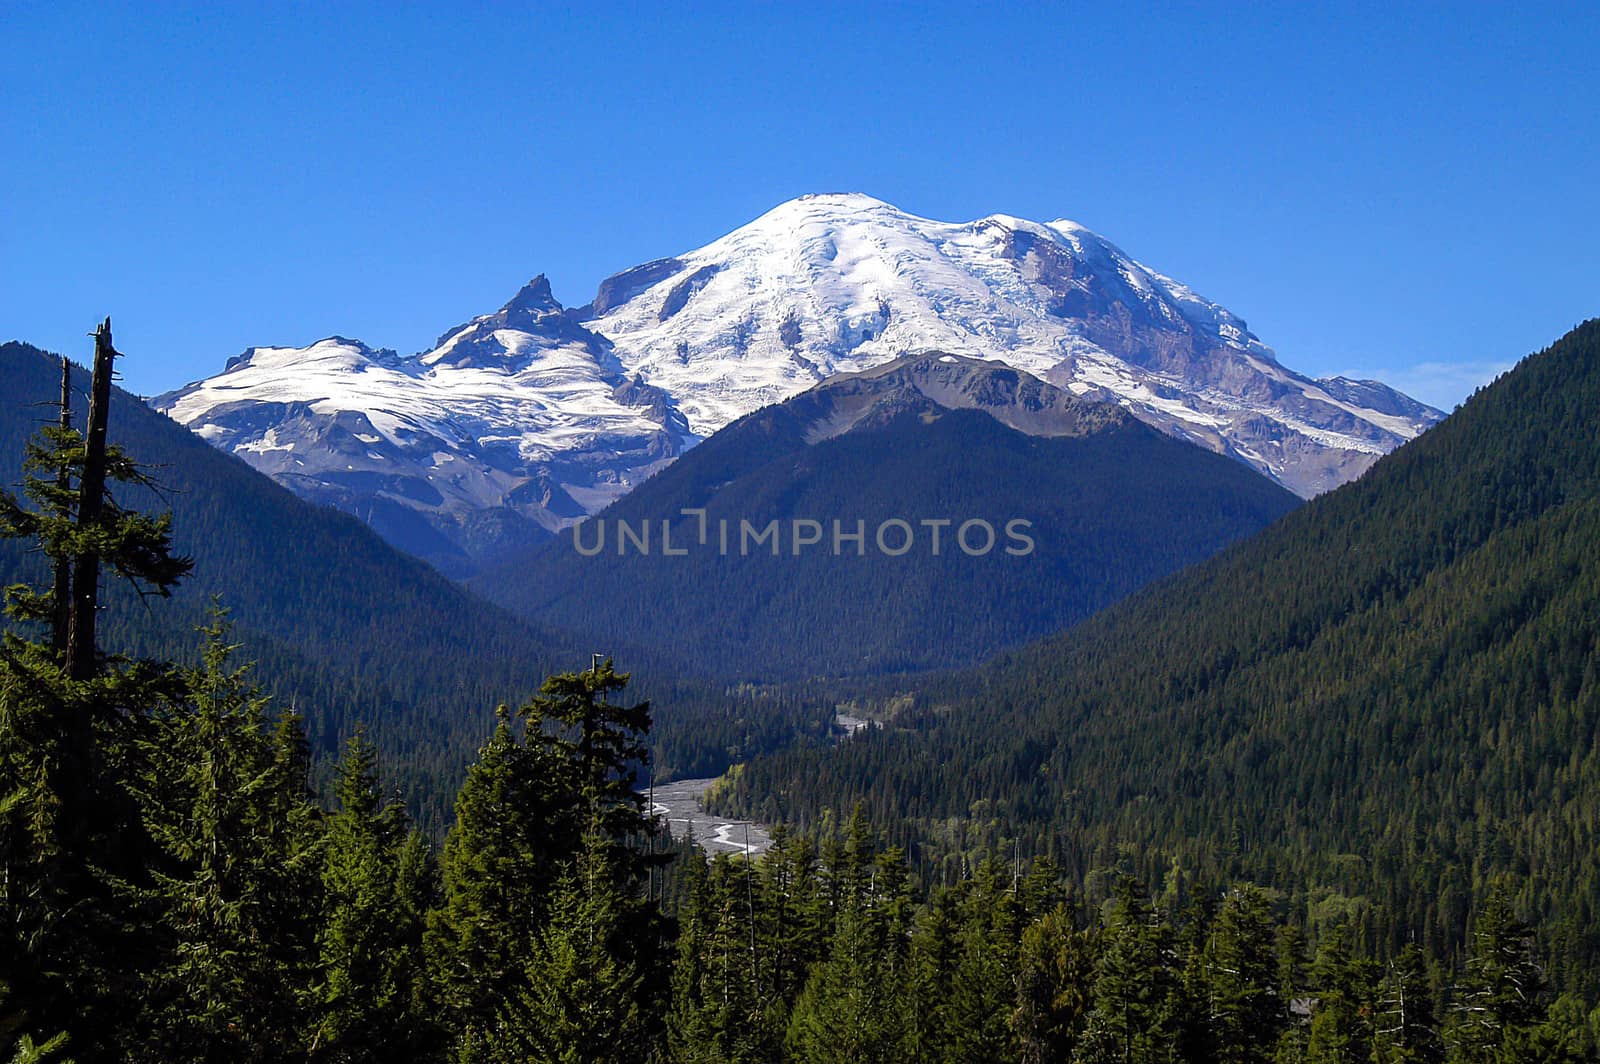 Mt Rainier under clear blue sky by cestes001